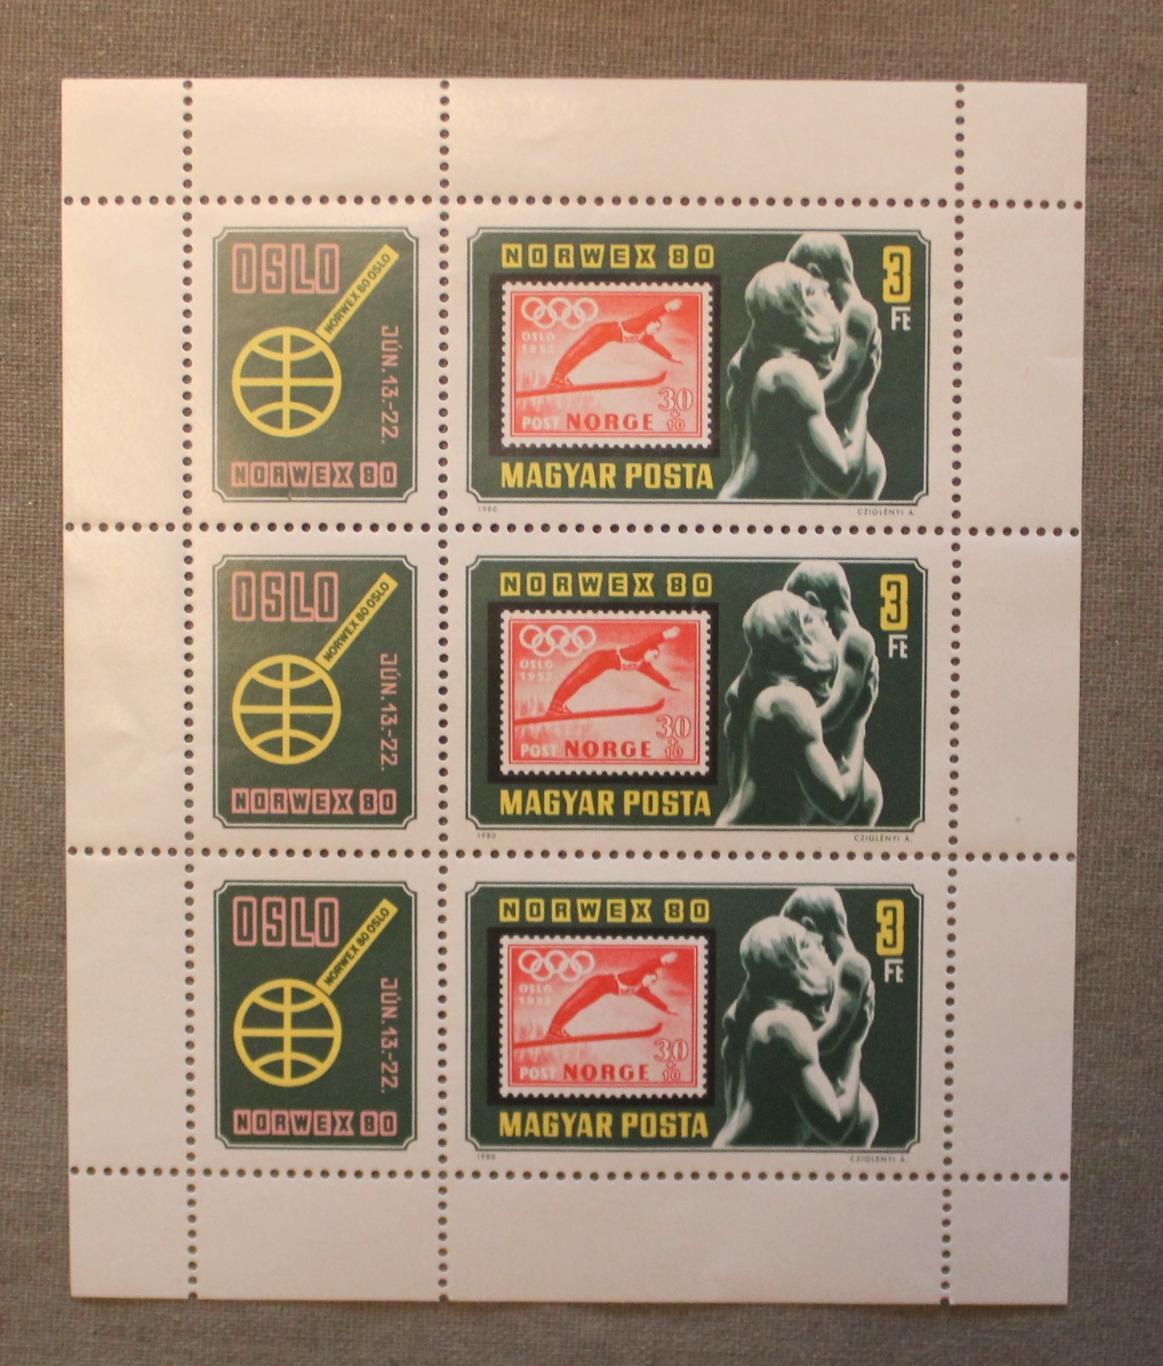 Филателистическая выставка NORWEX 80 Почта Венгрии 1980